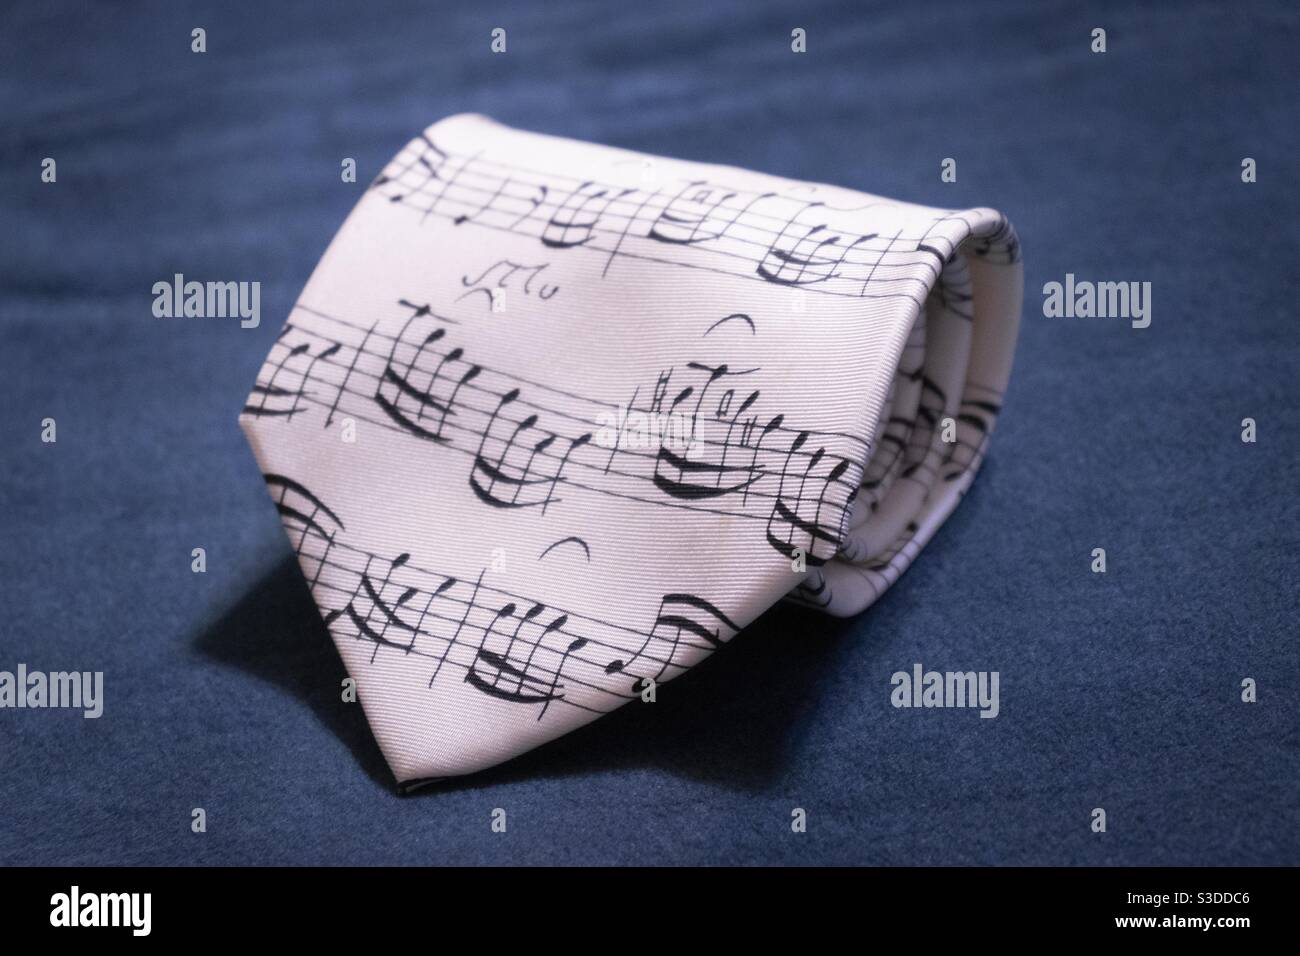 Cravate musicale Banque de photographies et d'images à haute résolution -  Alamy